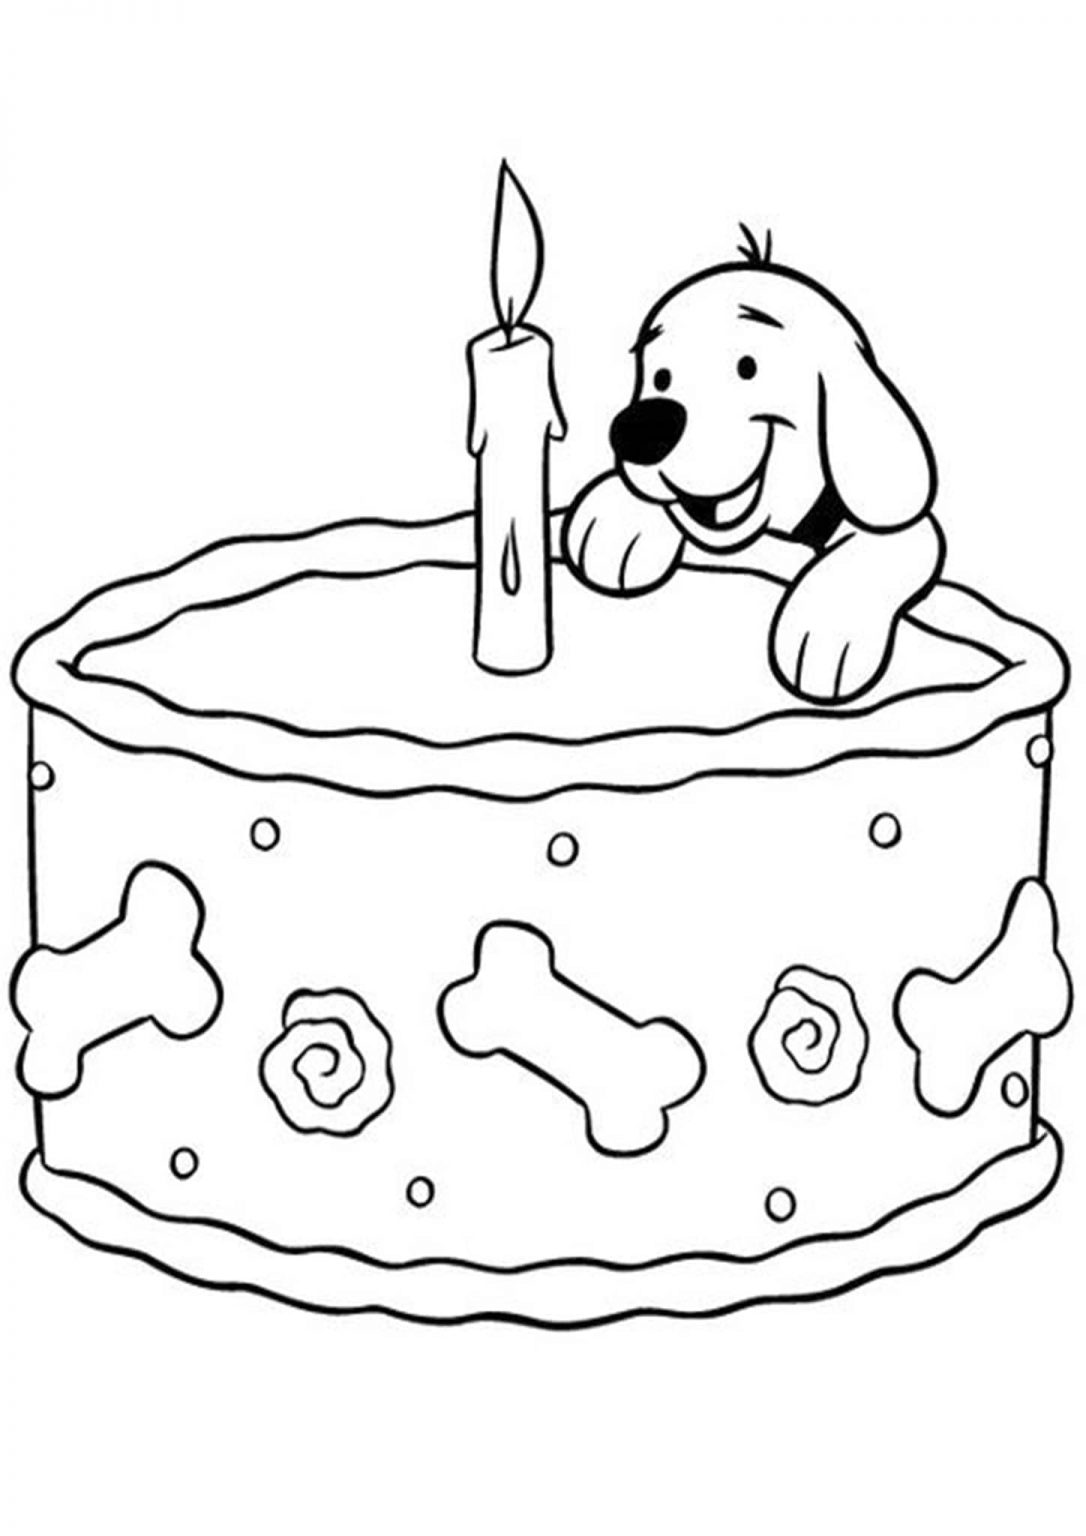 Раскраска собачка с днем рождения